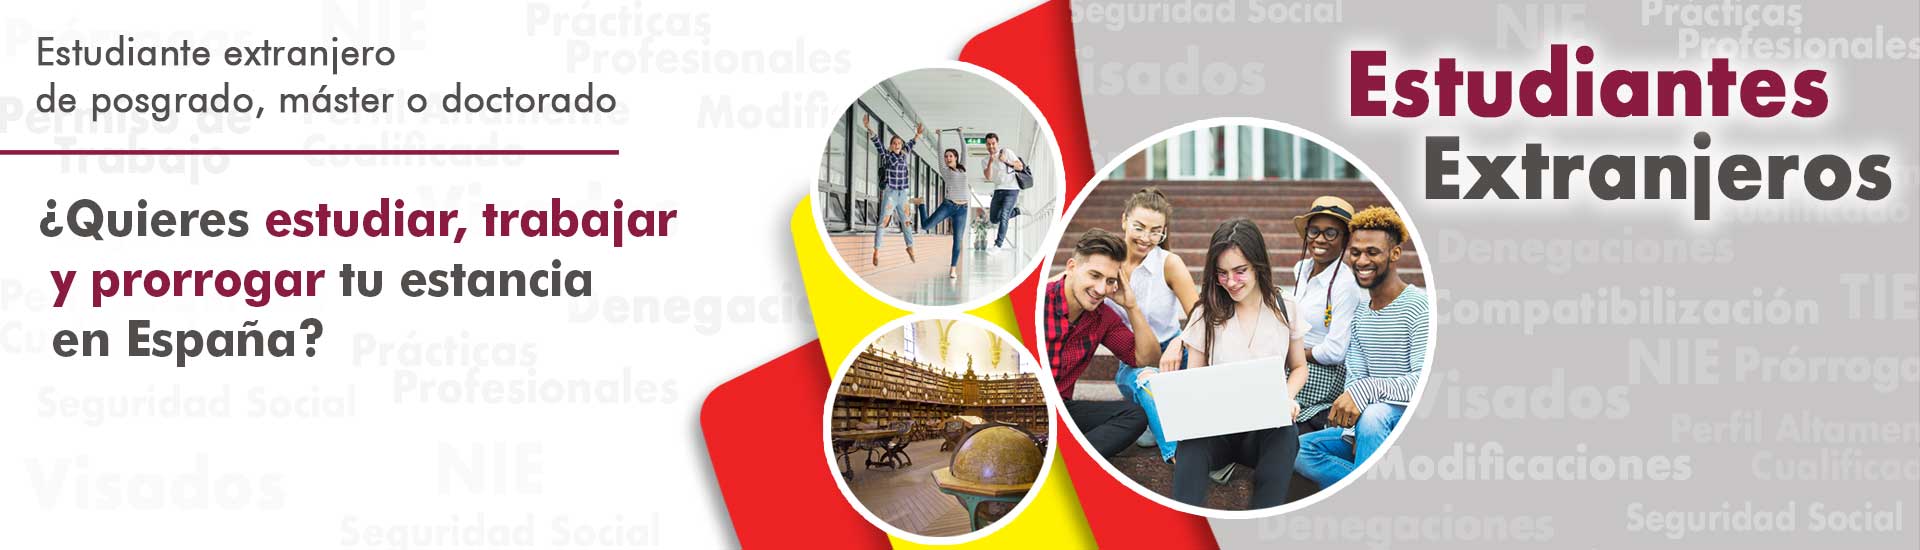 Estudiantes extranjeros residencia España Habeas Legal - Abogados Internacionales especializados en Extranjería, Inmigración y Laboral 3